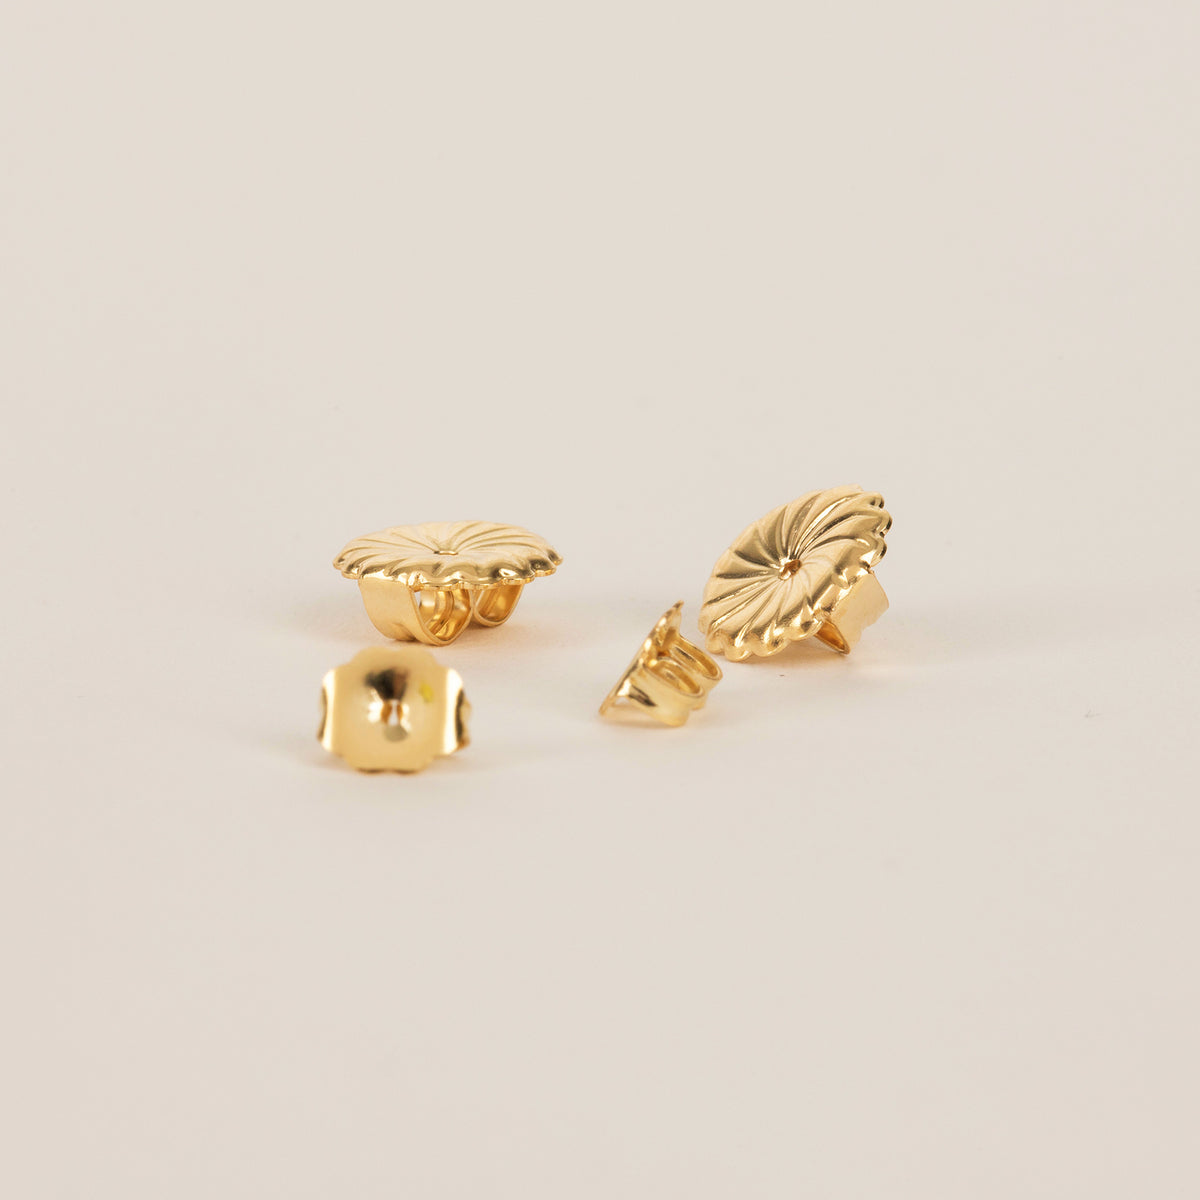 Large Gold Earring Backs - Gwen Beloti Jewelry